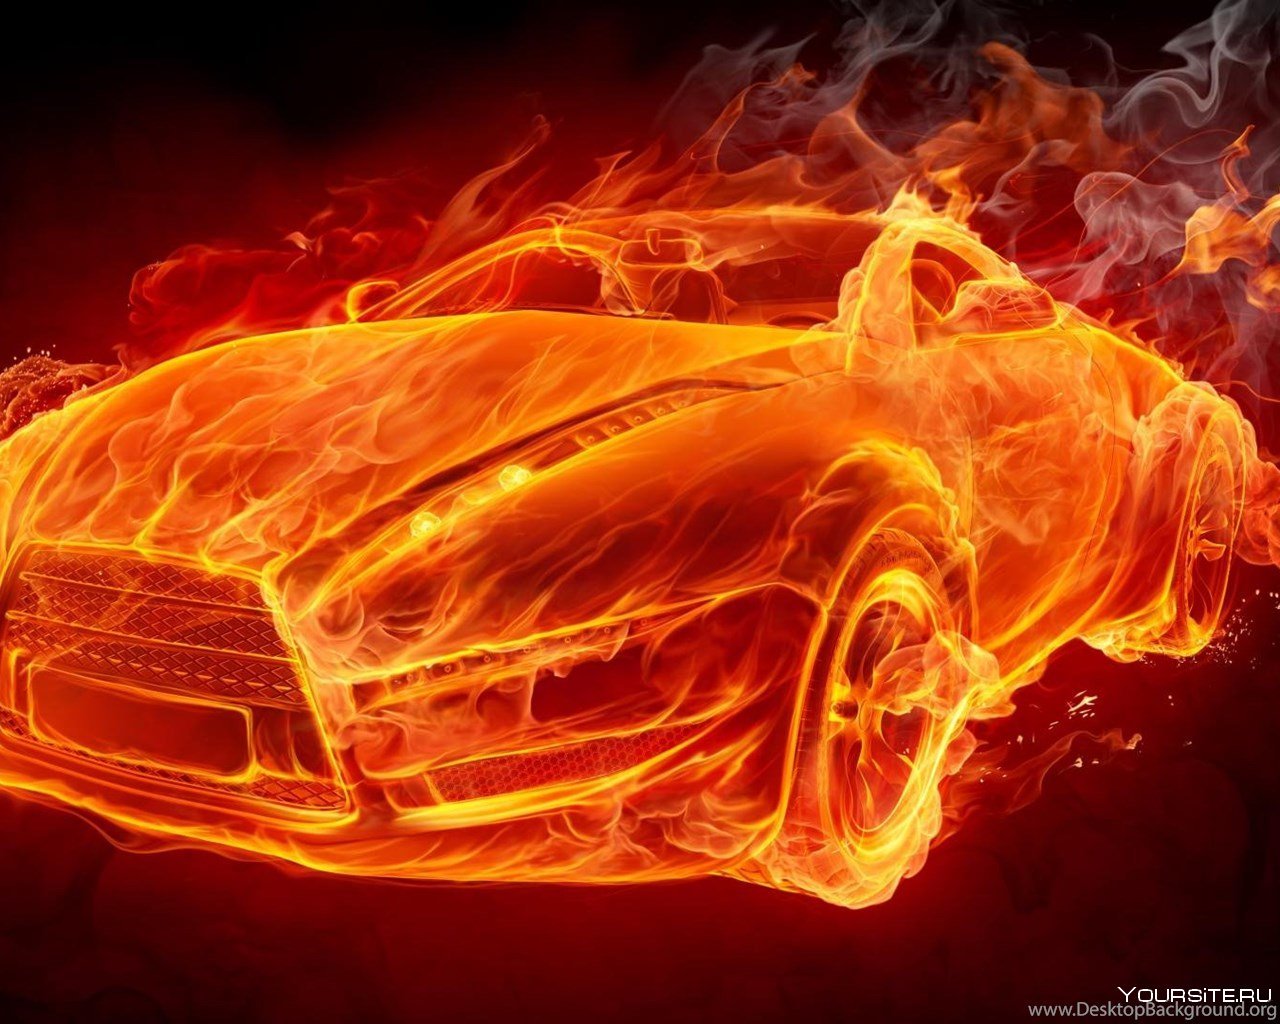 Огонь, пламя, языки пламени 🔥 аэрография пленкой на автомобиль, мотоцикл, шлем